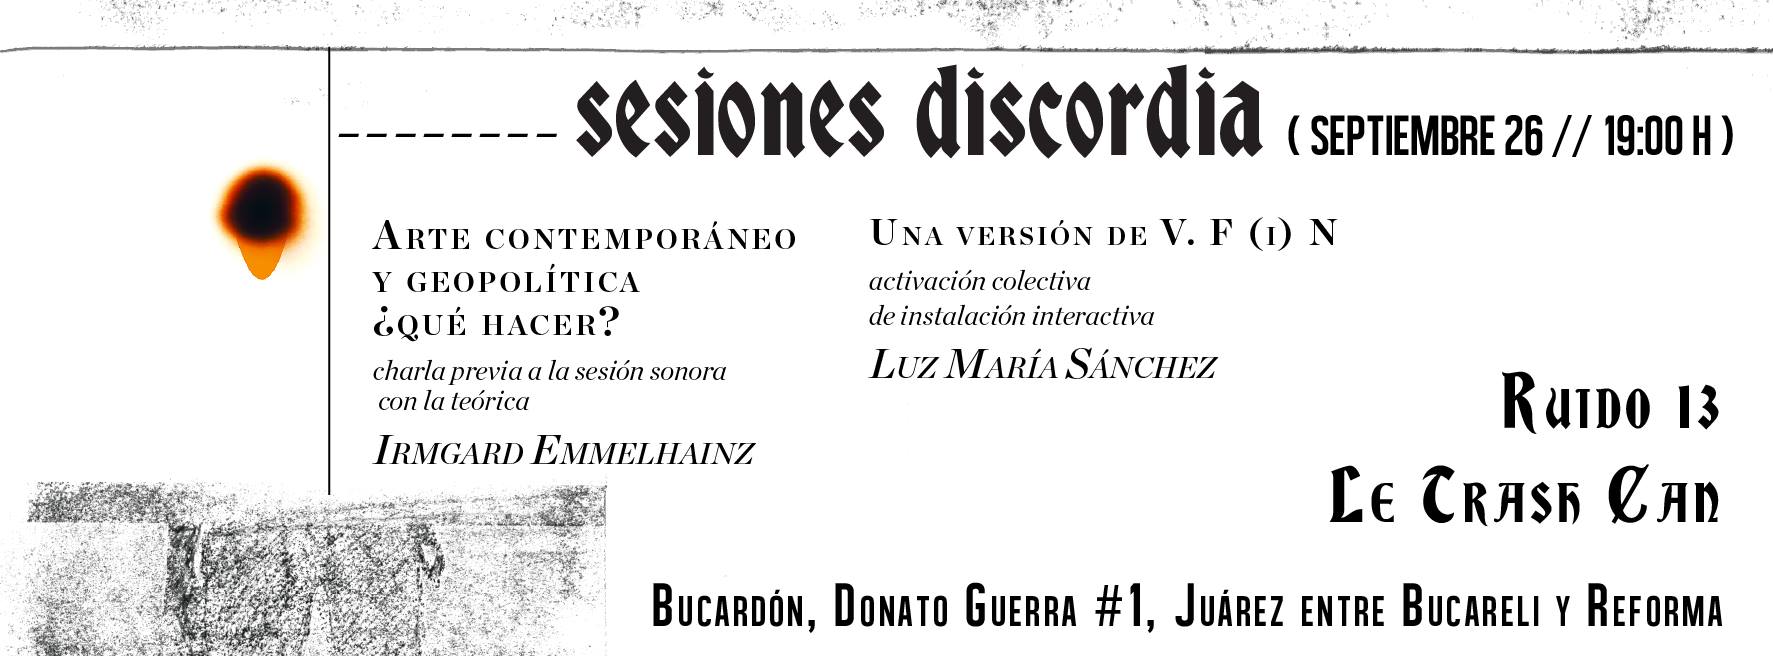 sesiones discordia (Diego Villaseñor, músico)